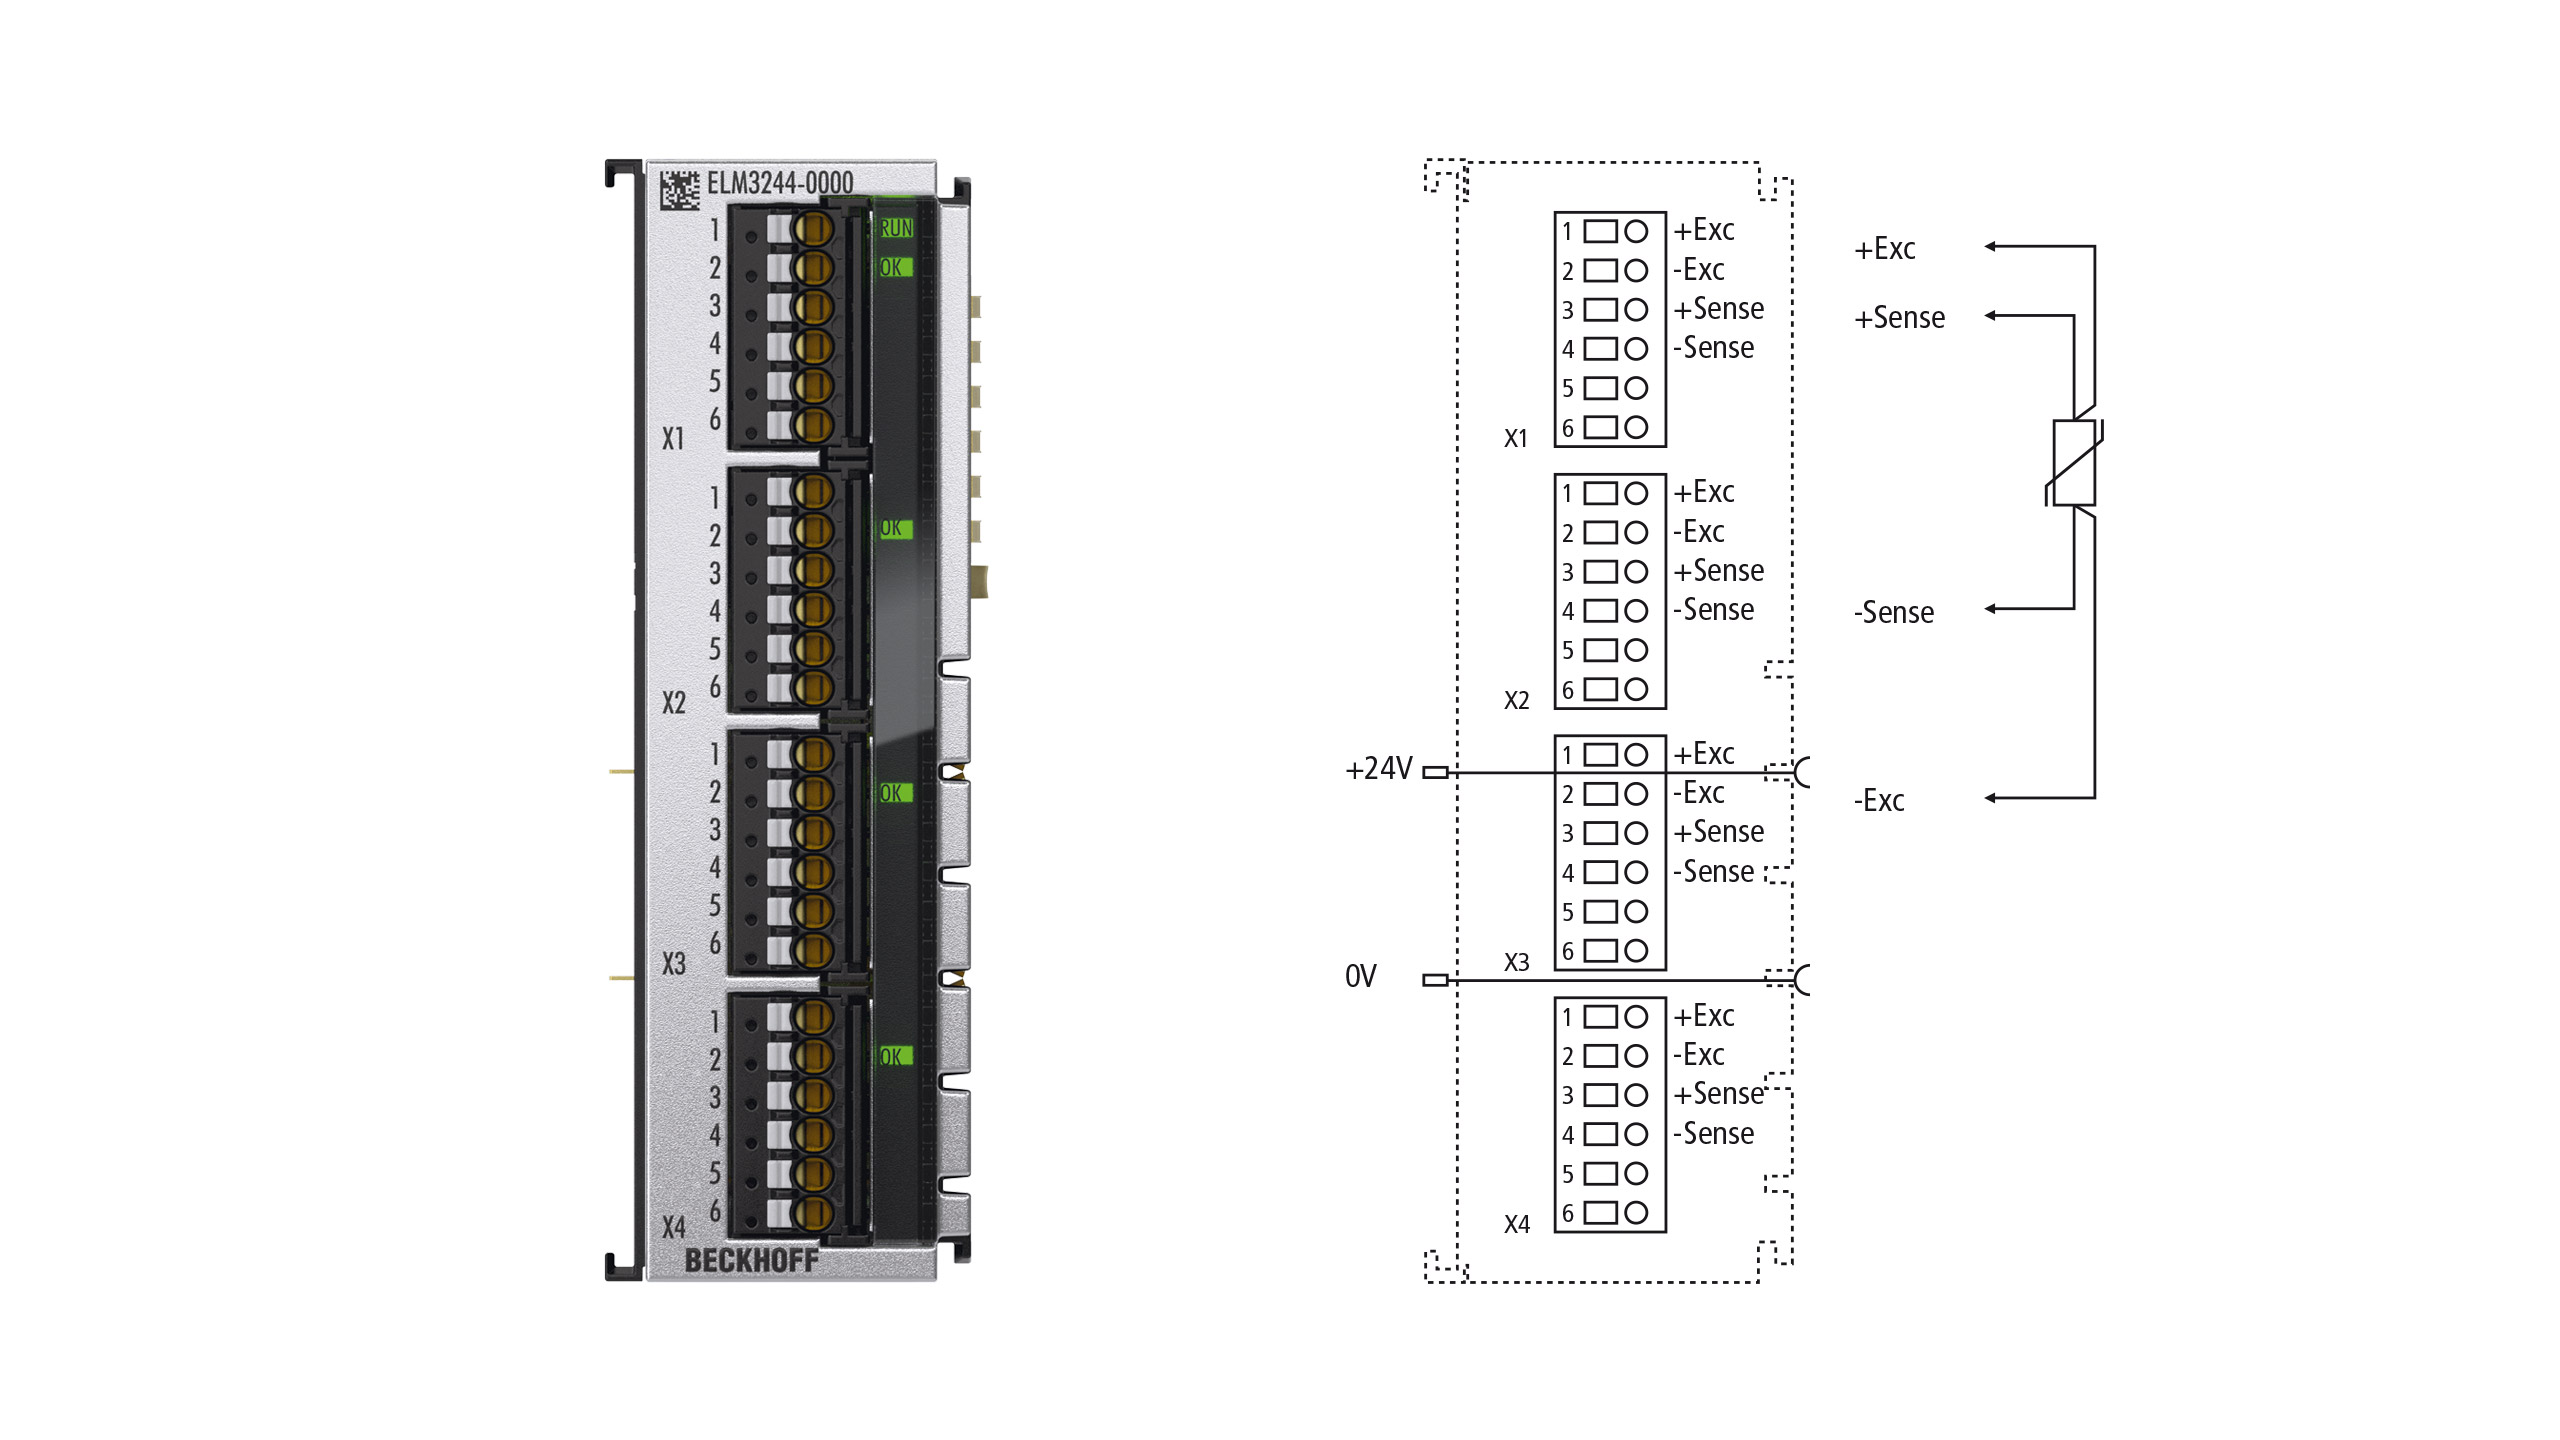 ELM3244-0000 | EtherCAT-Klemme, 4-Kanal-Analog-Eingang, Temperatur, RTD, 24 Bit, hochpräzise, 1 kSps